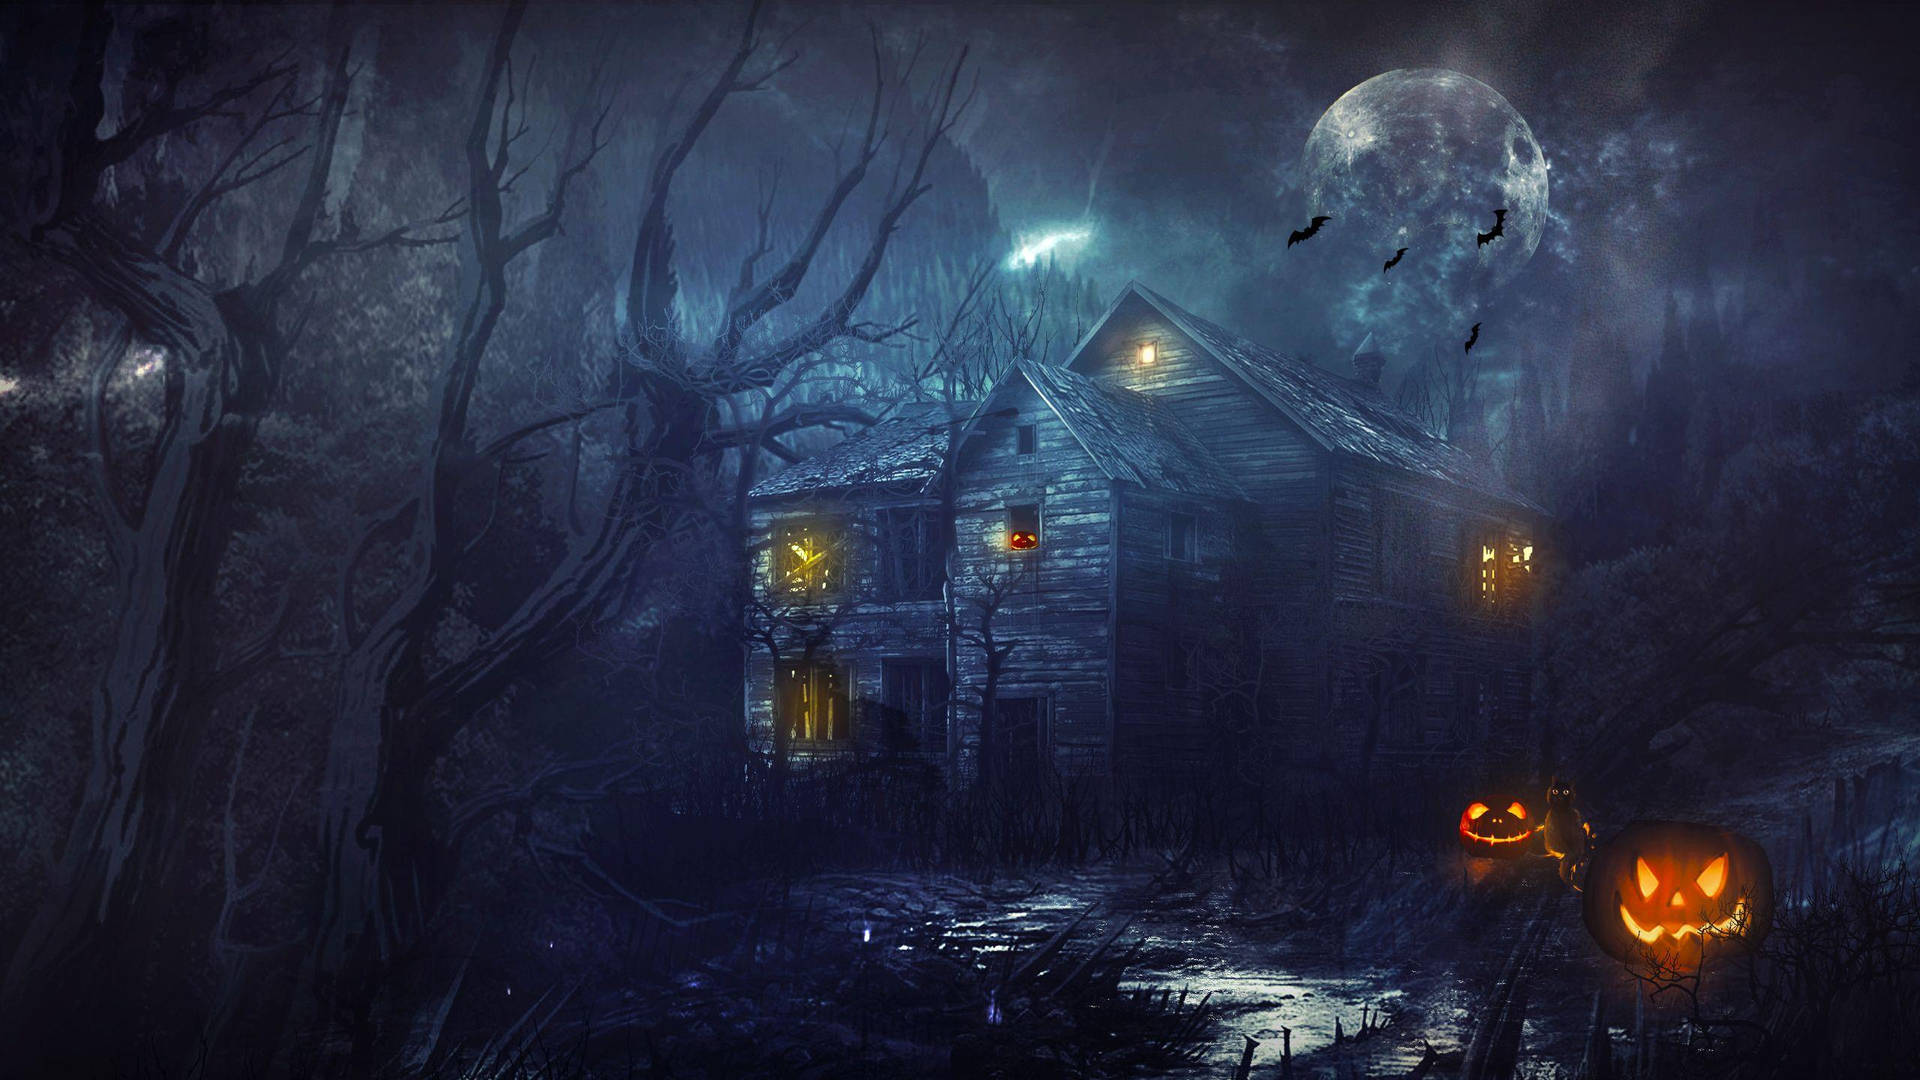 Machdich Bereit, Diesen Halloween Im Spukhaus Erschreckt Zu Werden. Wallpaper